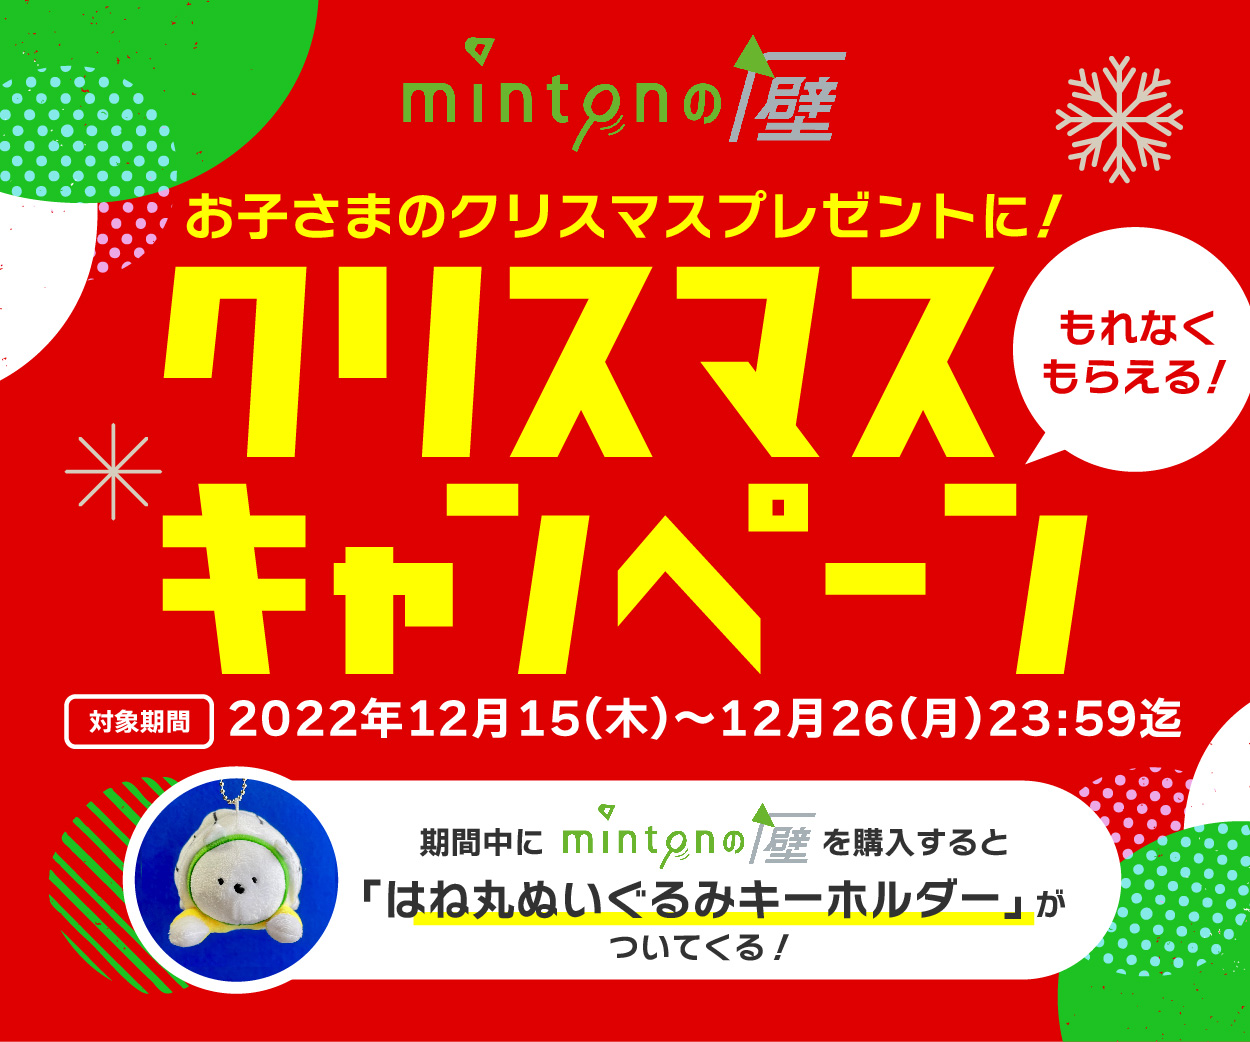 minton【公式アカウント】 on X: 